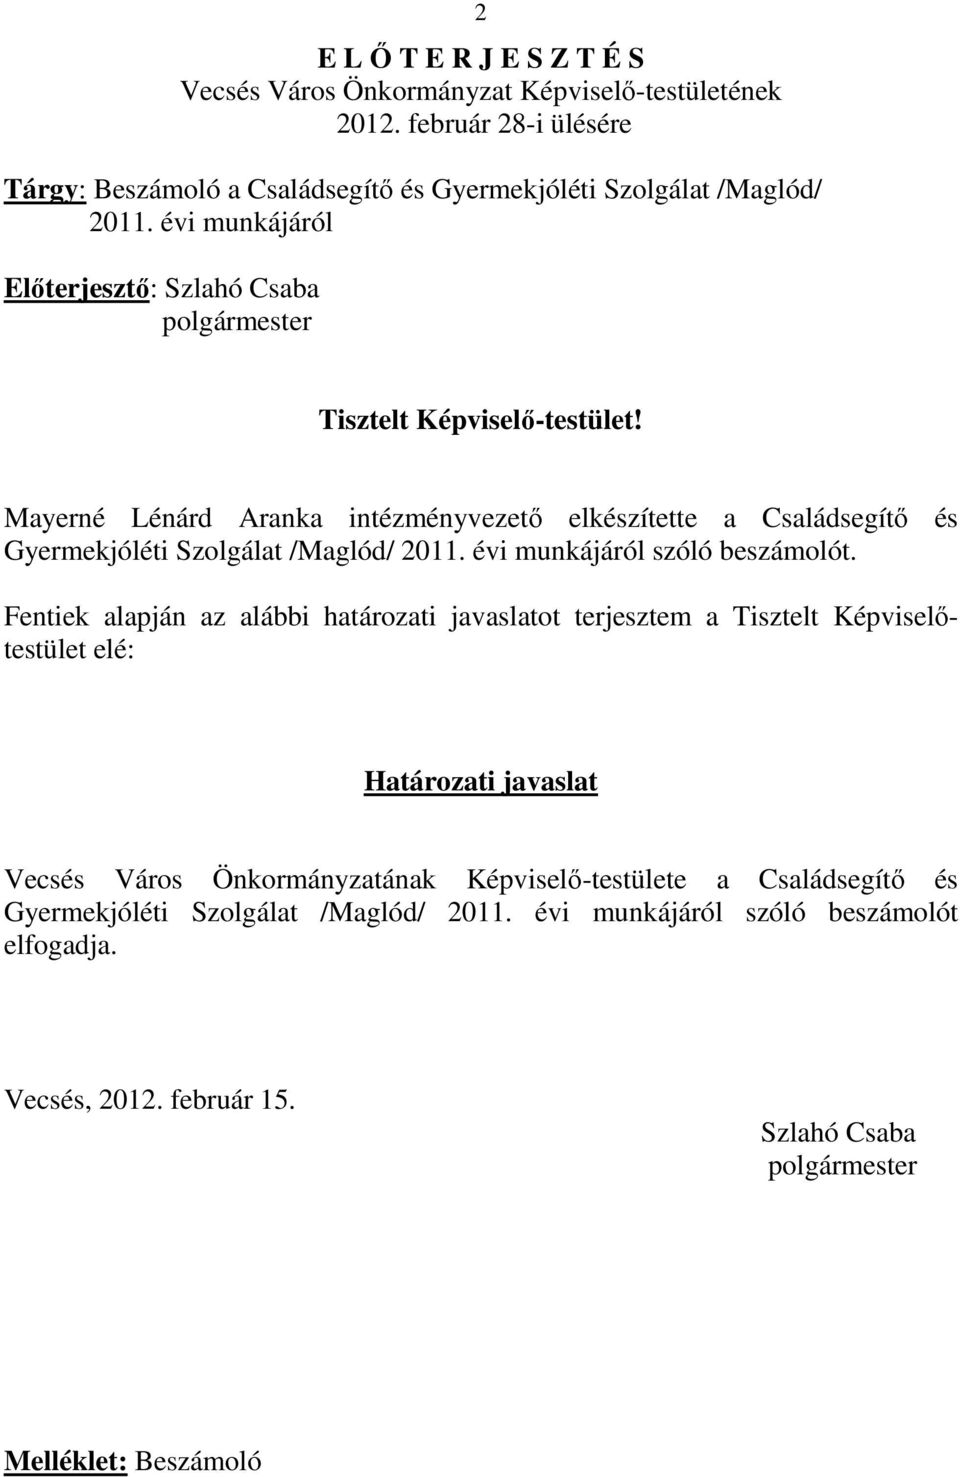 Mayerné Lénárd Aranka intézményvezetı elkészítette a Családsegítı és Gyermekjóléti Szolgálat /Maglód/ 2011. évi munkájáról szóló beszámolót.